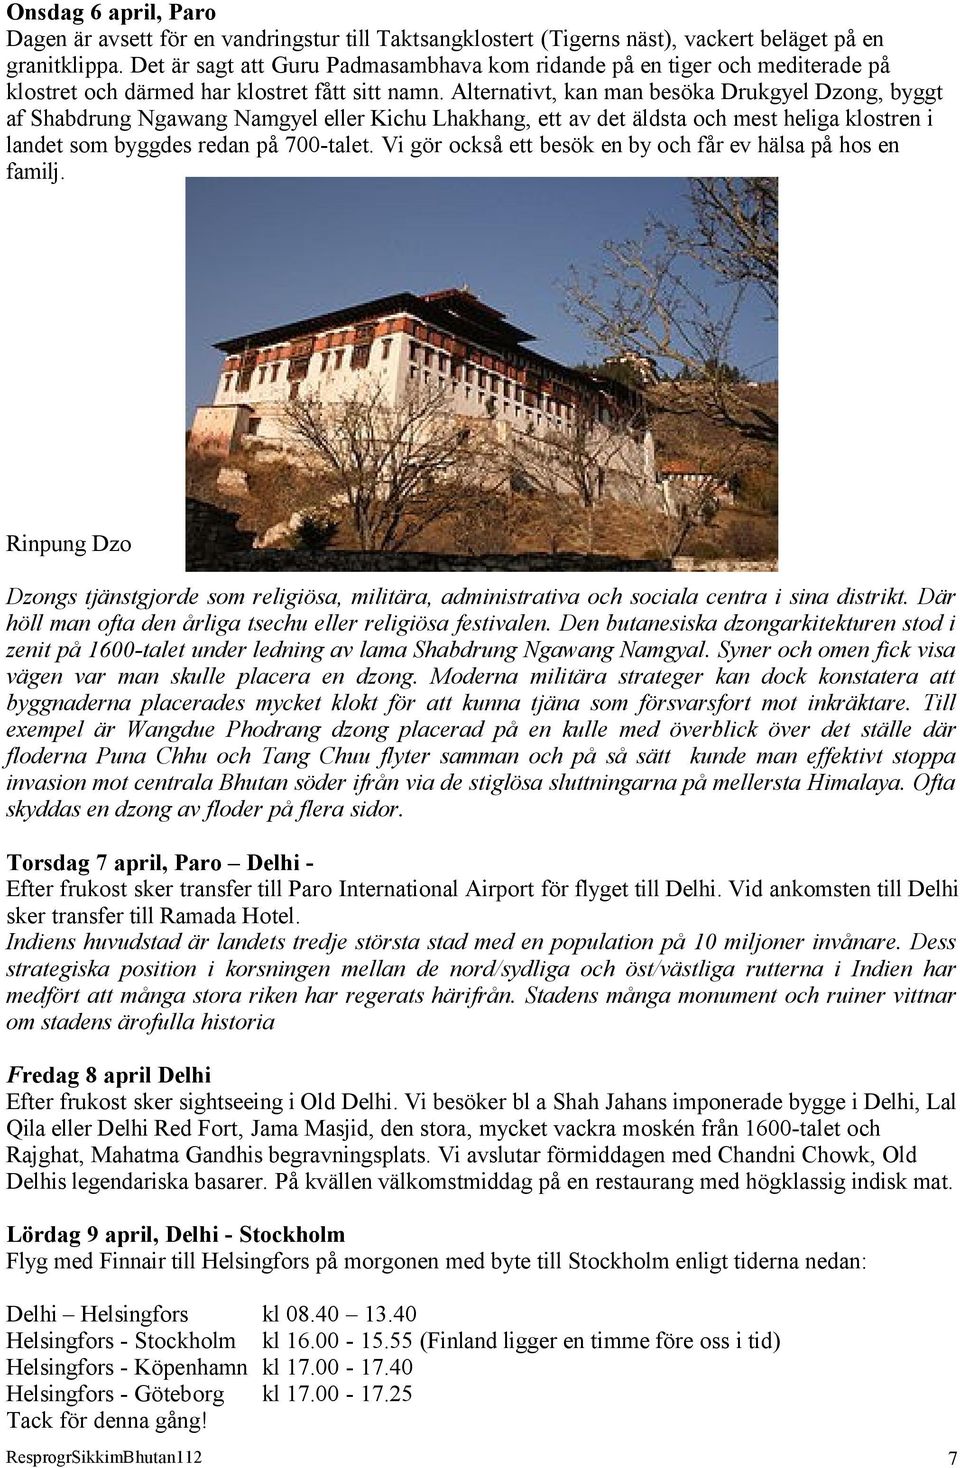 Alternativt, kan man besöka Drukgyel Dzong, byggt af Shabdrung Ngawang Namgyel eller Kichu Lhakhang, ett av det äldsta och mest heliga klostren i landet som byggdes redan på 700-talet.